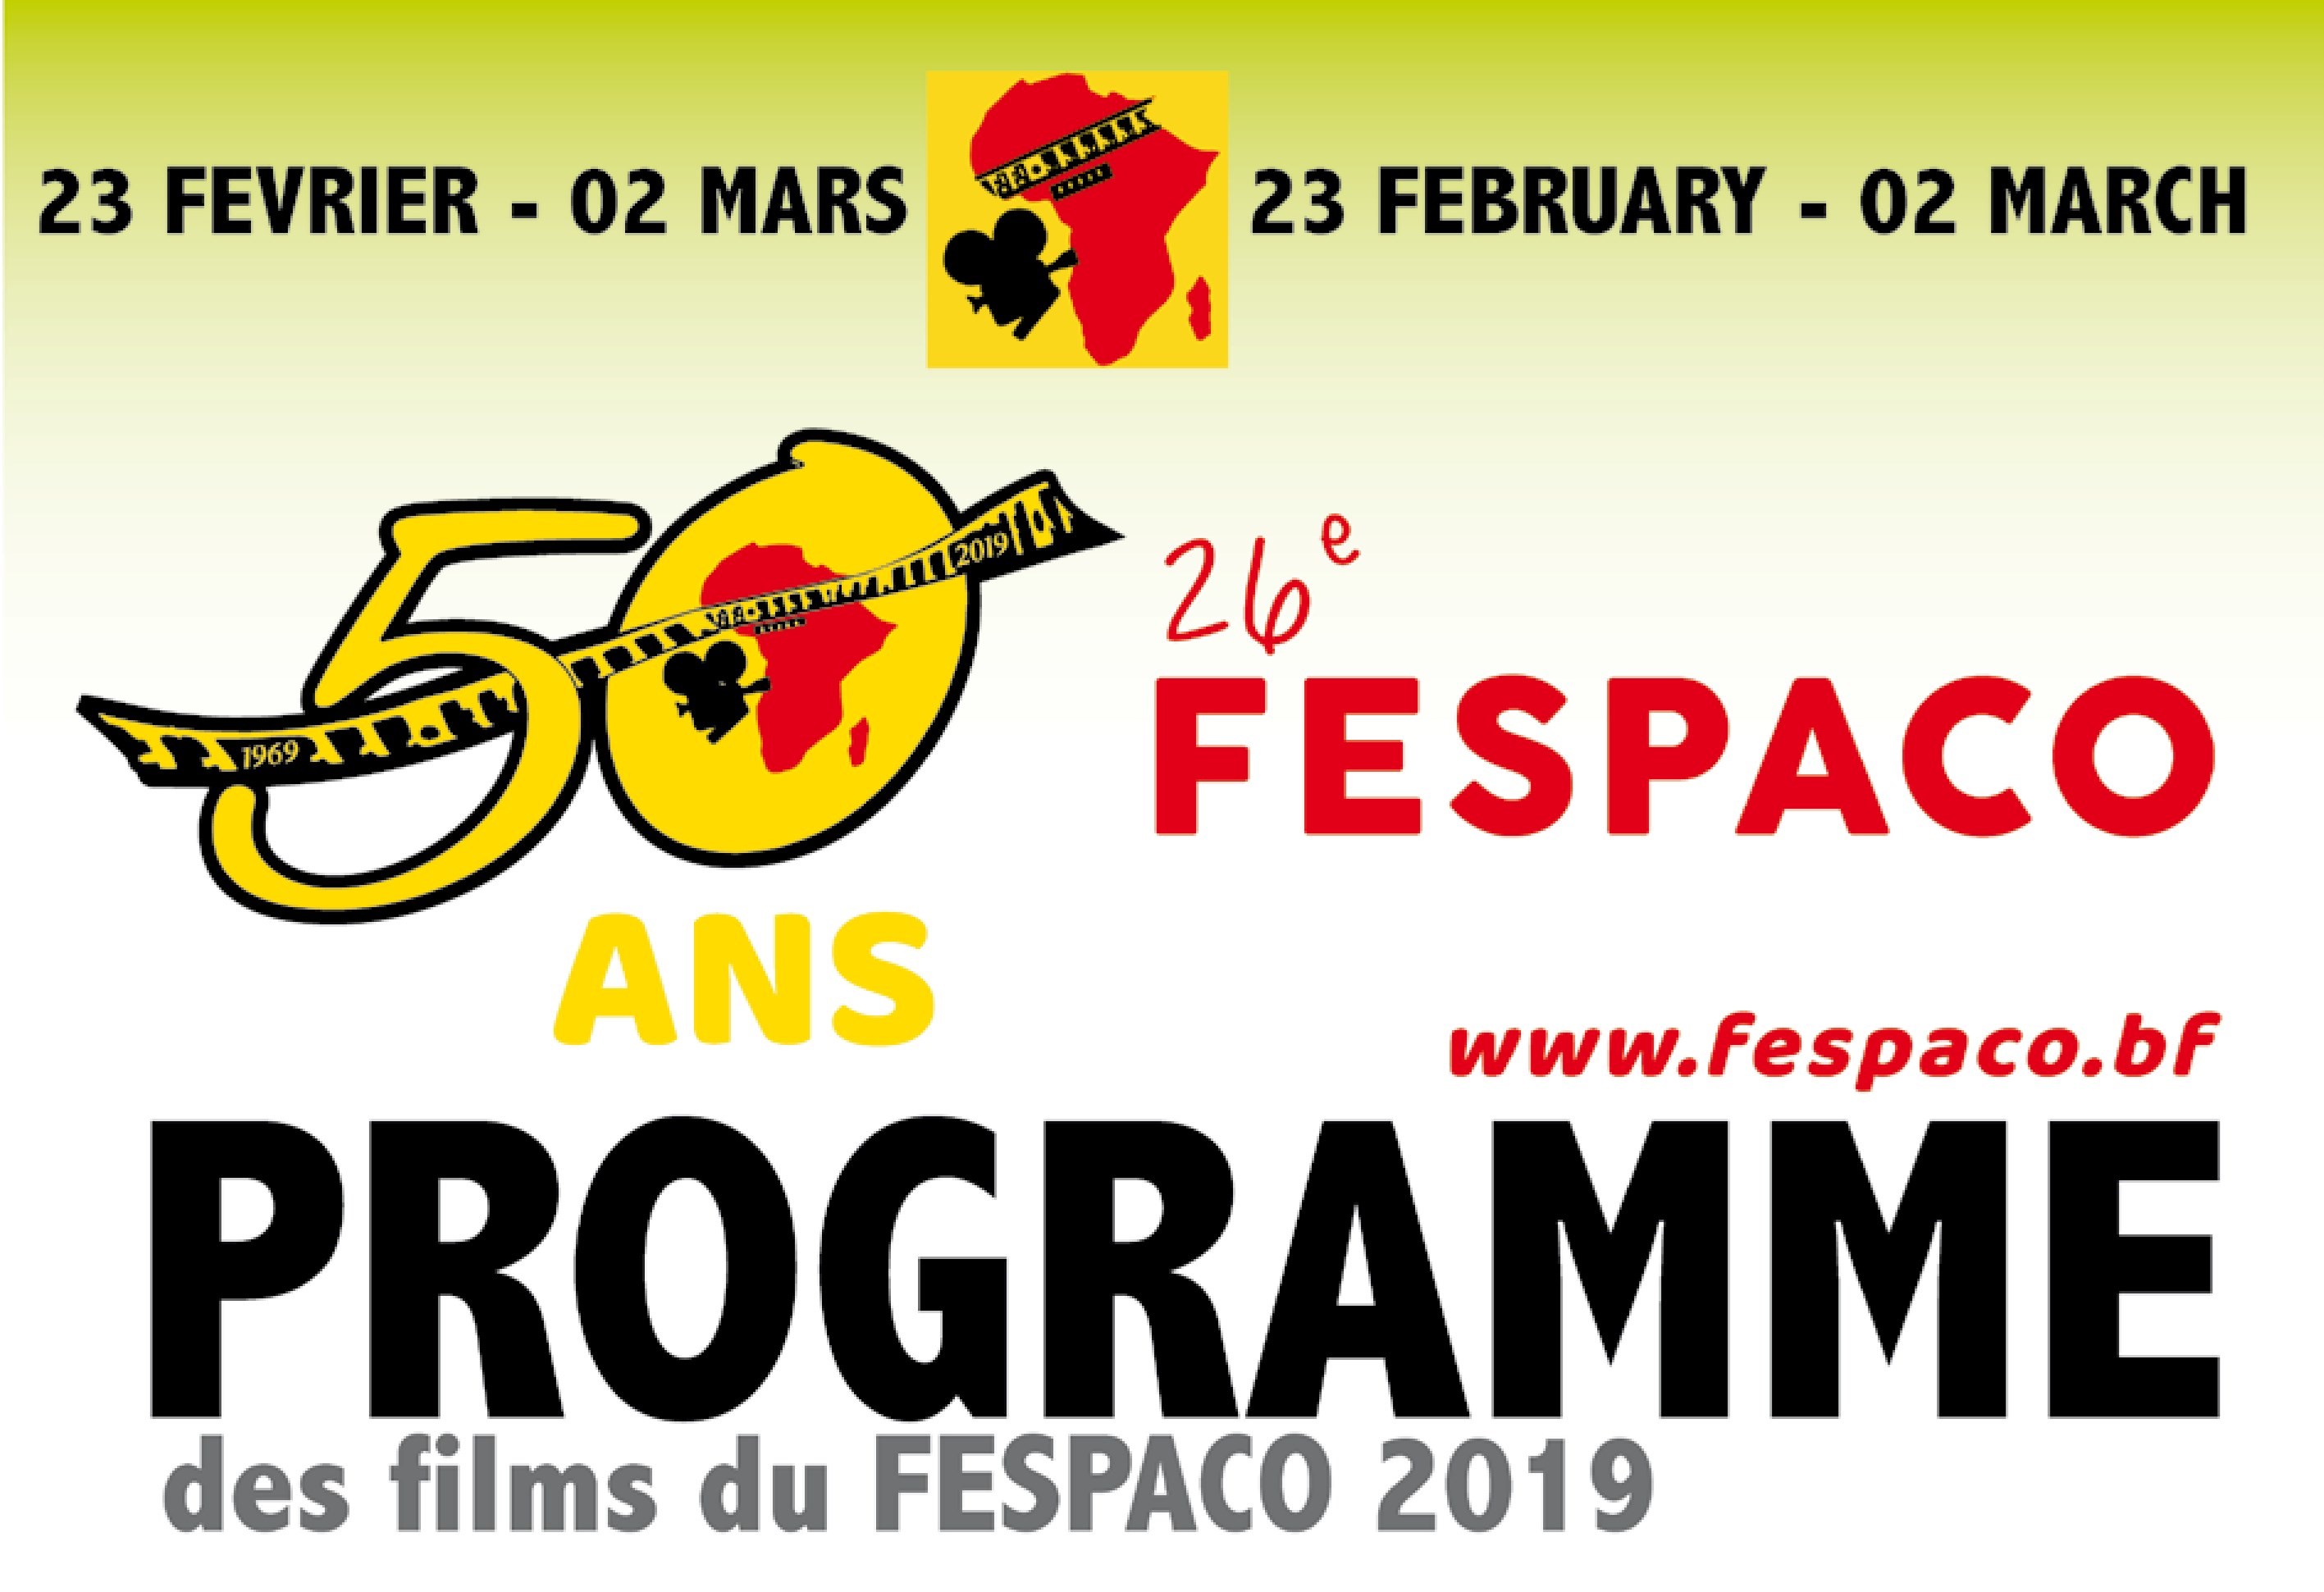 Fespaco 2019 : Programme de projection des films du mardi 26 février 2019